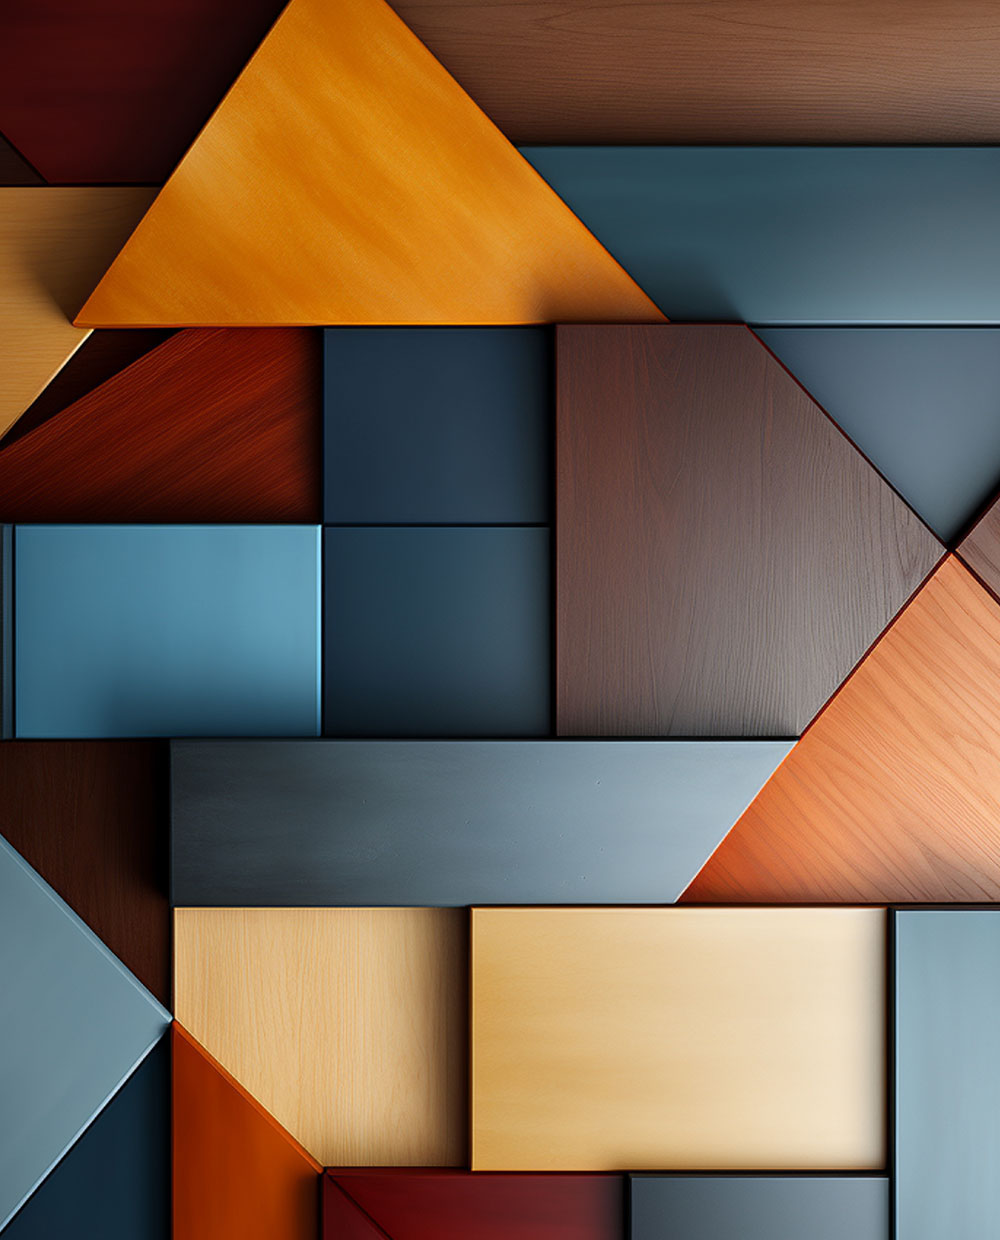 Geometrical colourful wood